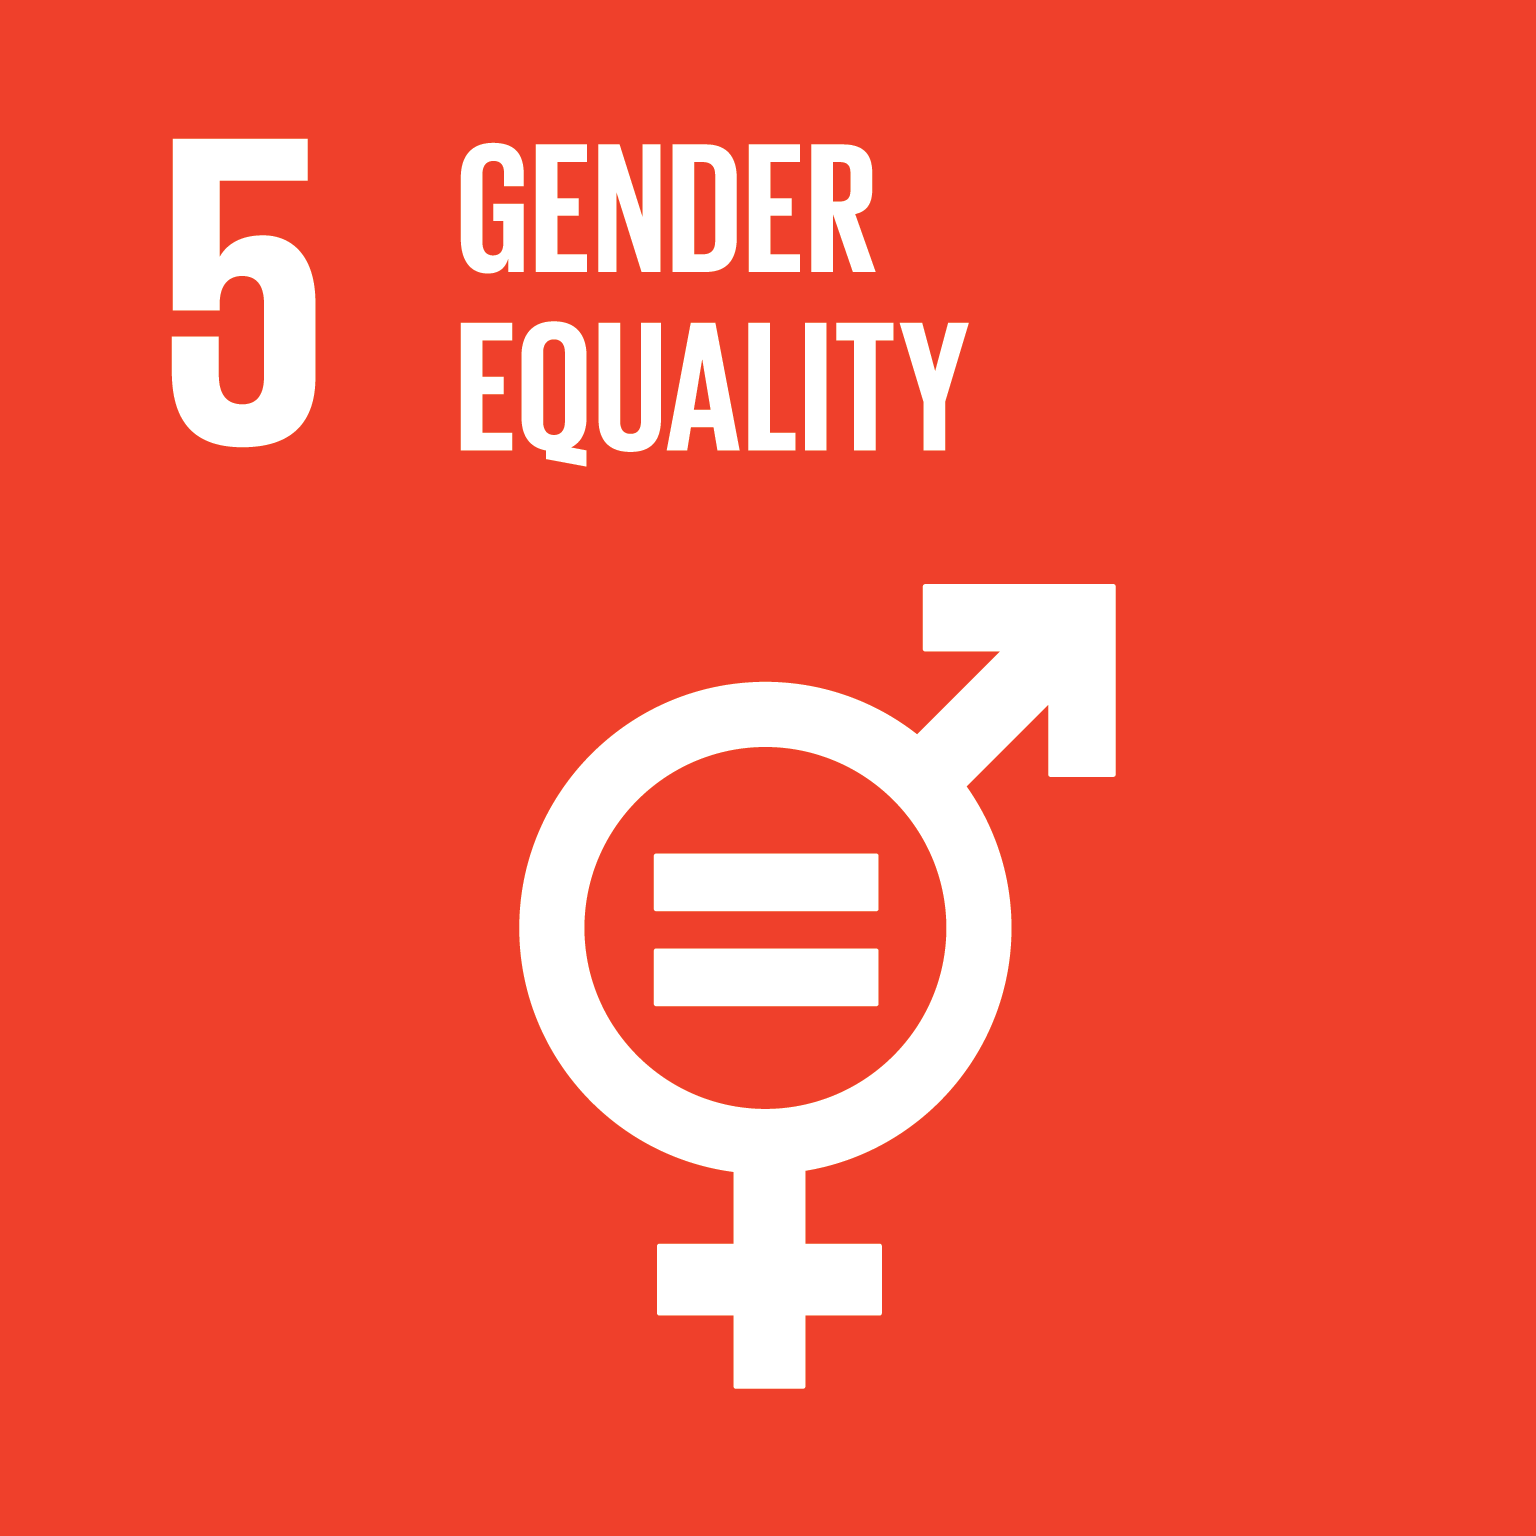 Goal 5 Gender Equaltiy